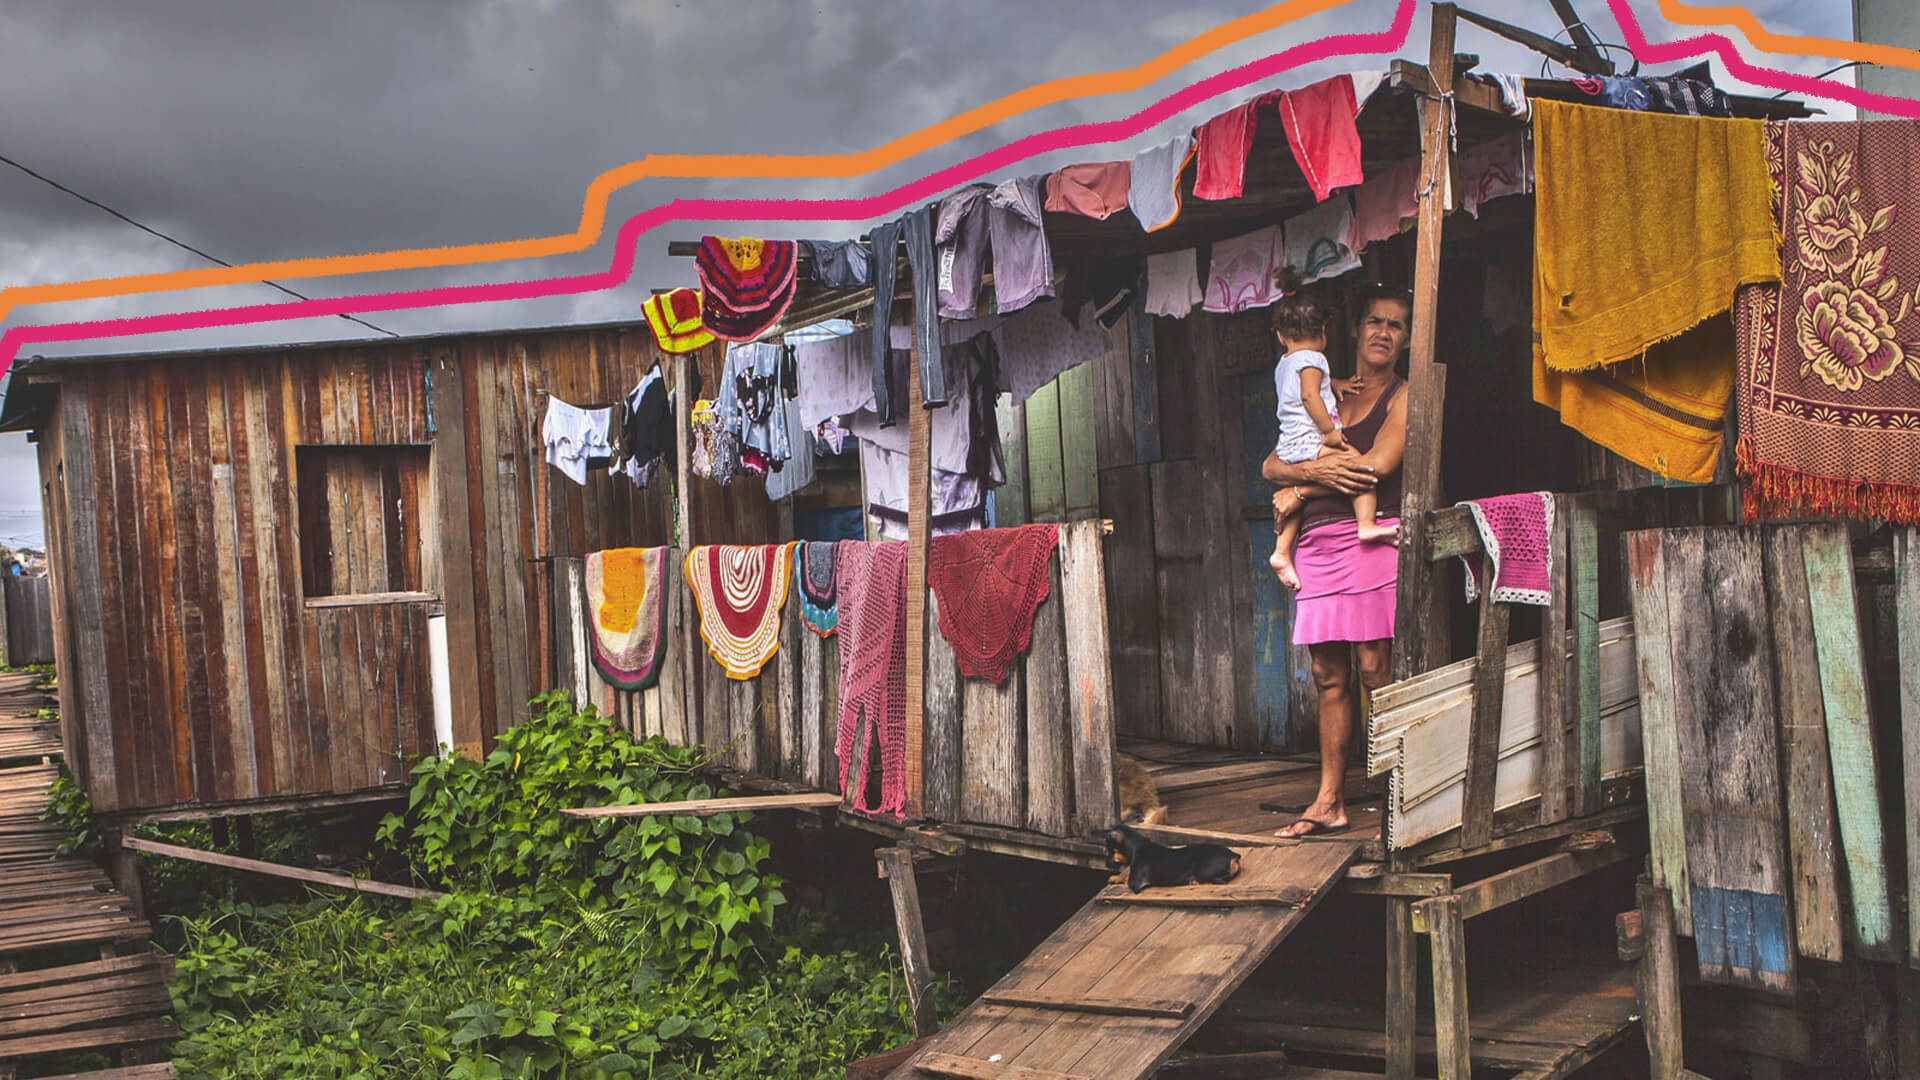 Na imagem, uma mulher segura uma criança no colo. Elas estão em frente à porta de uma casa de madeira precária, com roupas coloridas estendidas no varal.